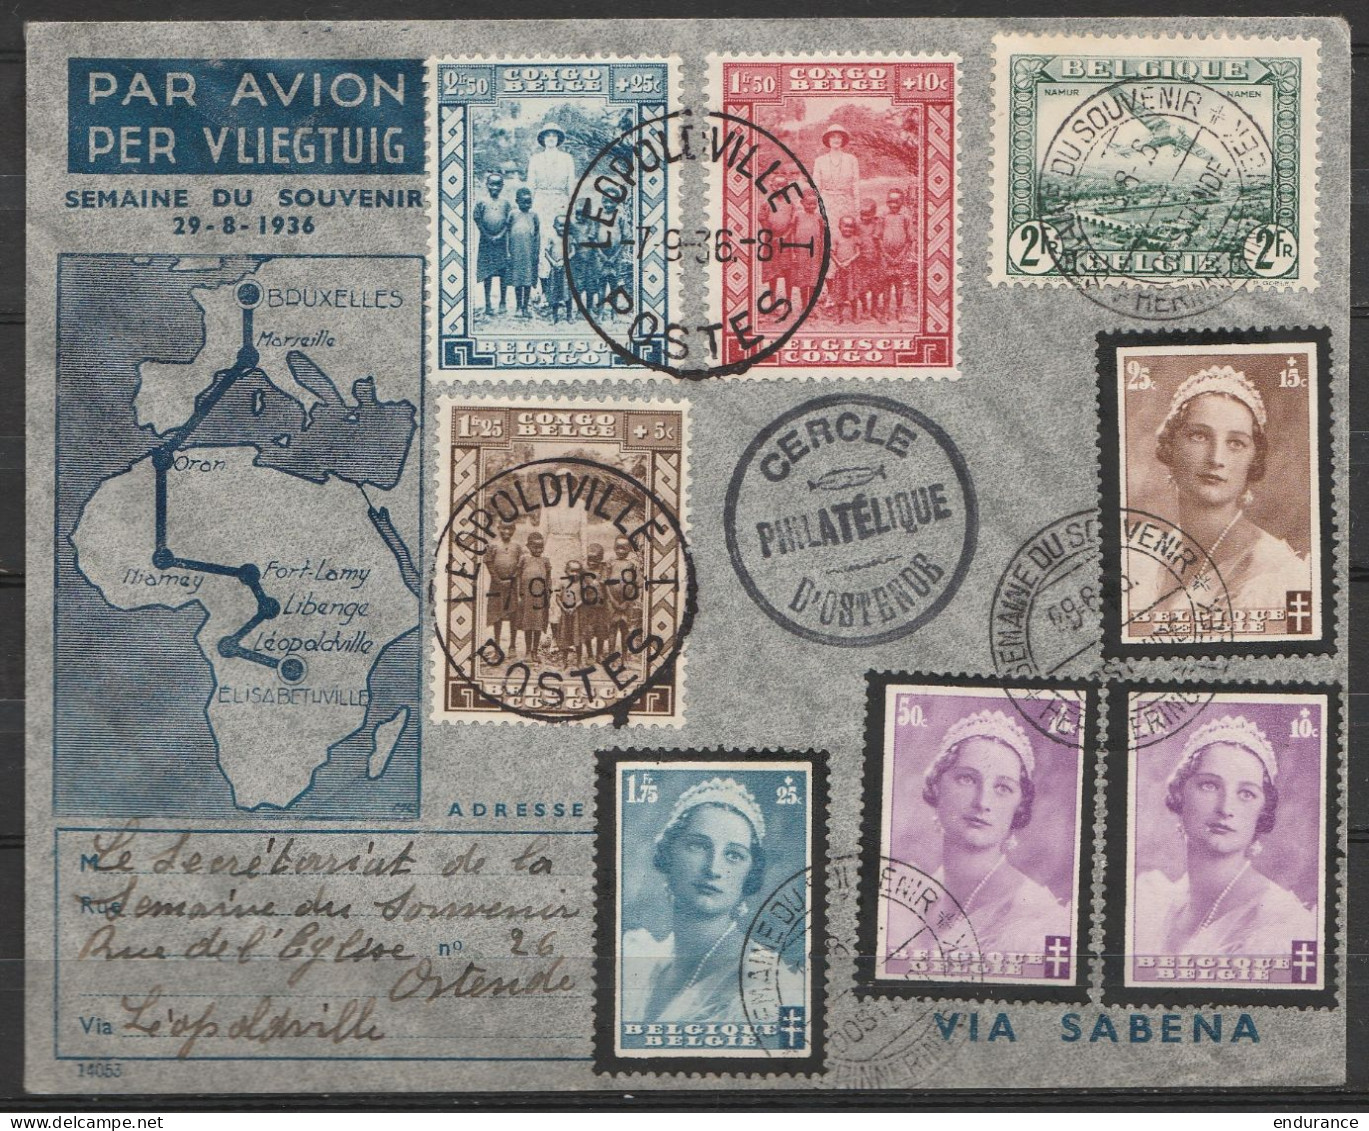 L. Par Avion "Semaine Du Souvenir" Affr. N°412+417+414x2 + PA3 Càd "SEMAINE DU SOUVENIR /29-8-1936/ OSTENDE" Pour E/V Vi - Covers & Documents